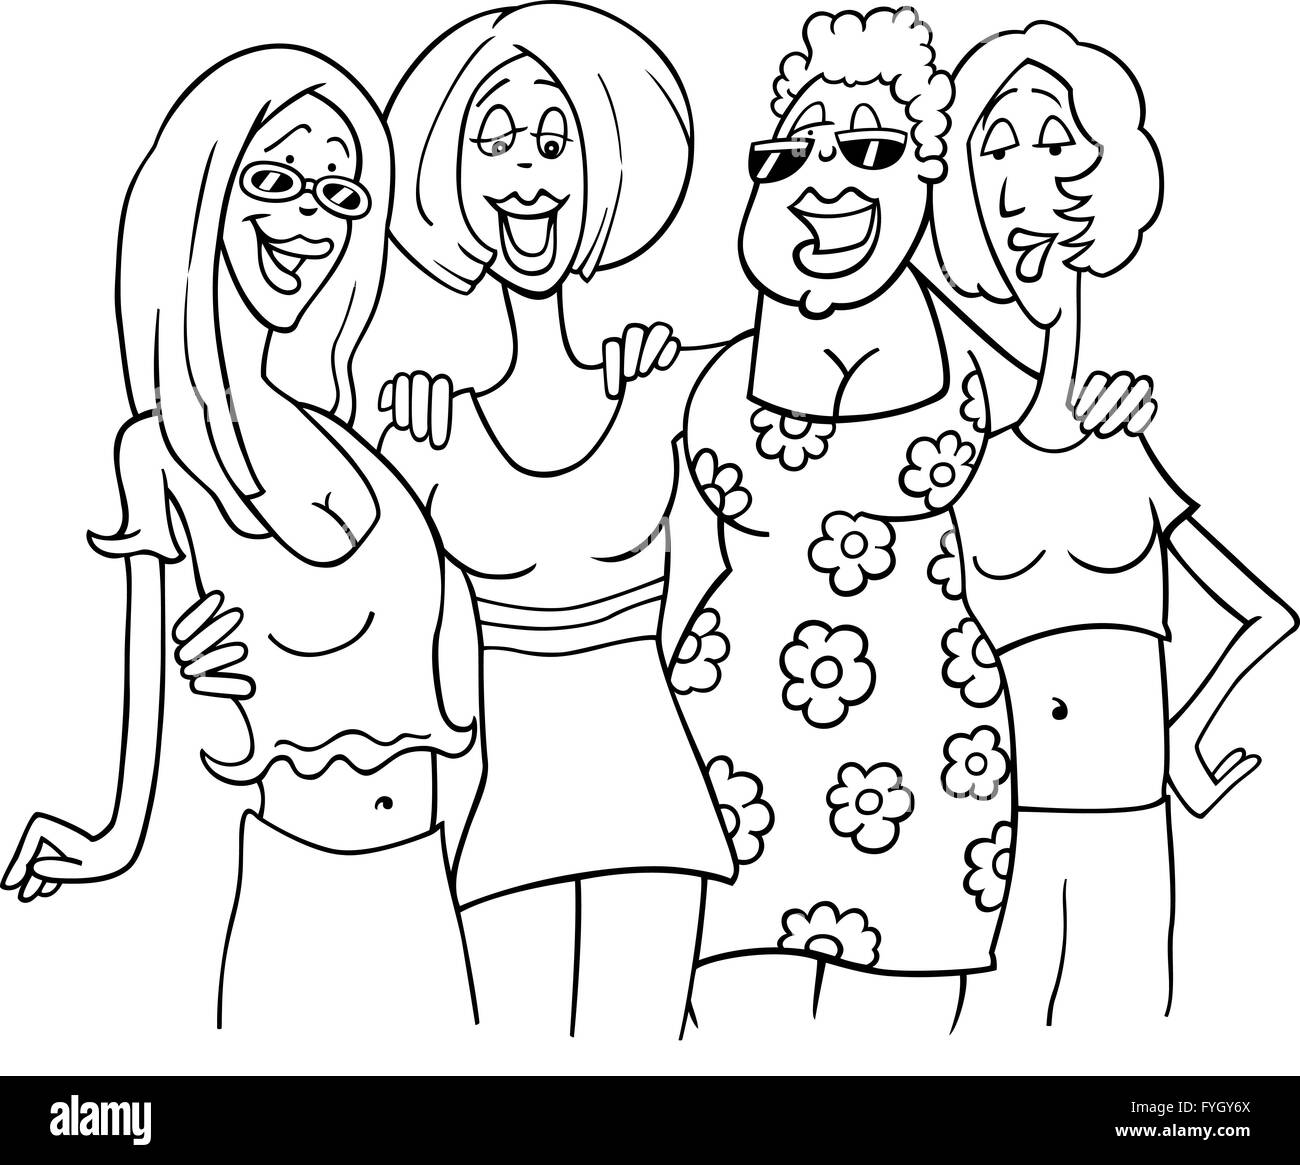 women friends cartoon illustration Stock Photo